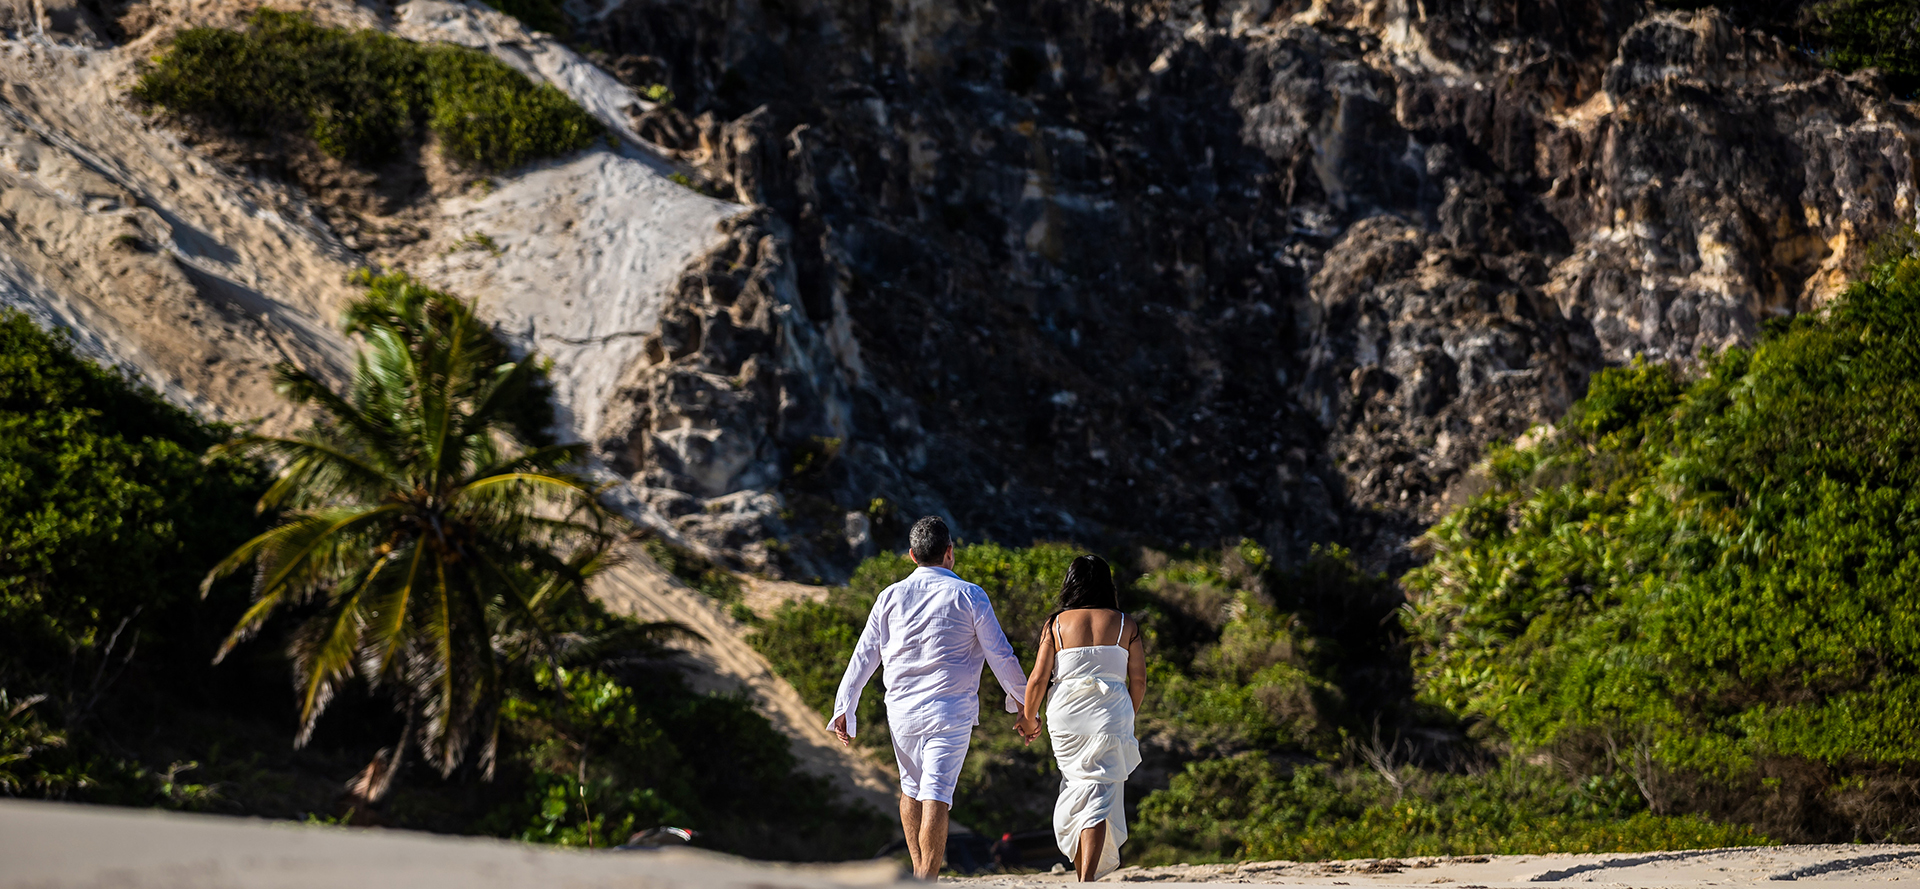 Samoalı çift sahilde yürürken bir randevuda.